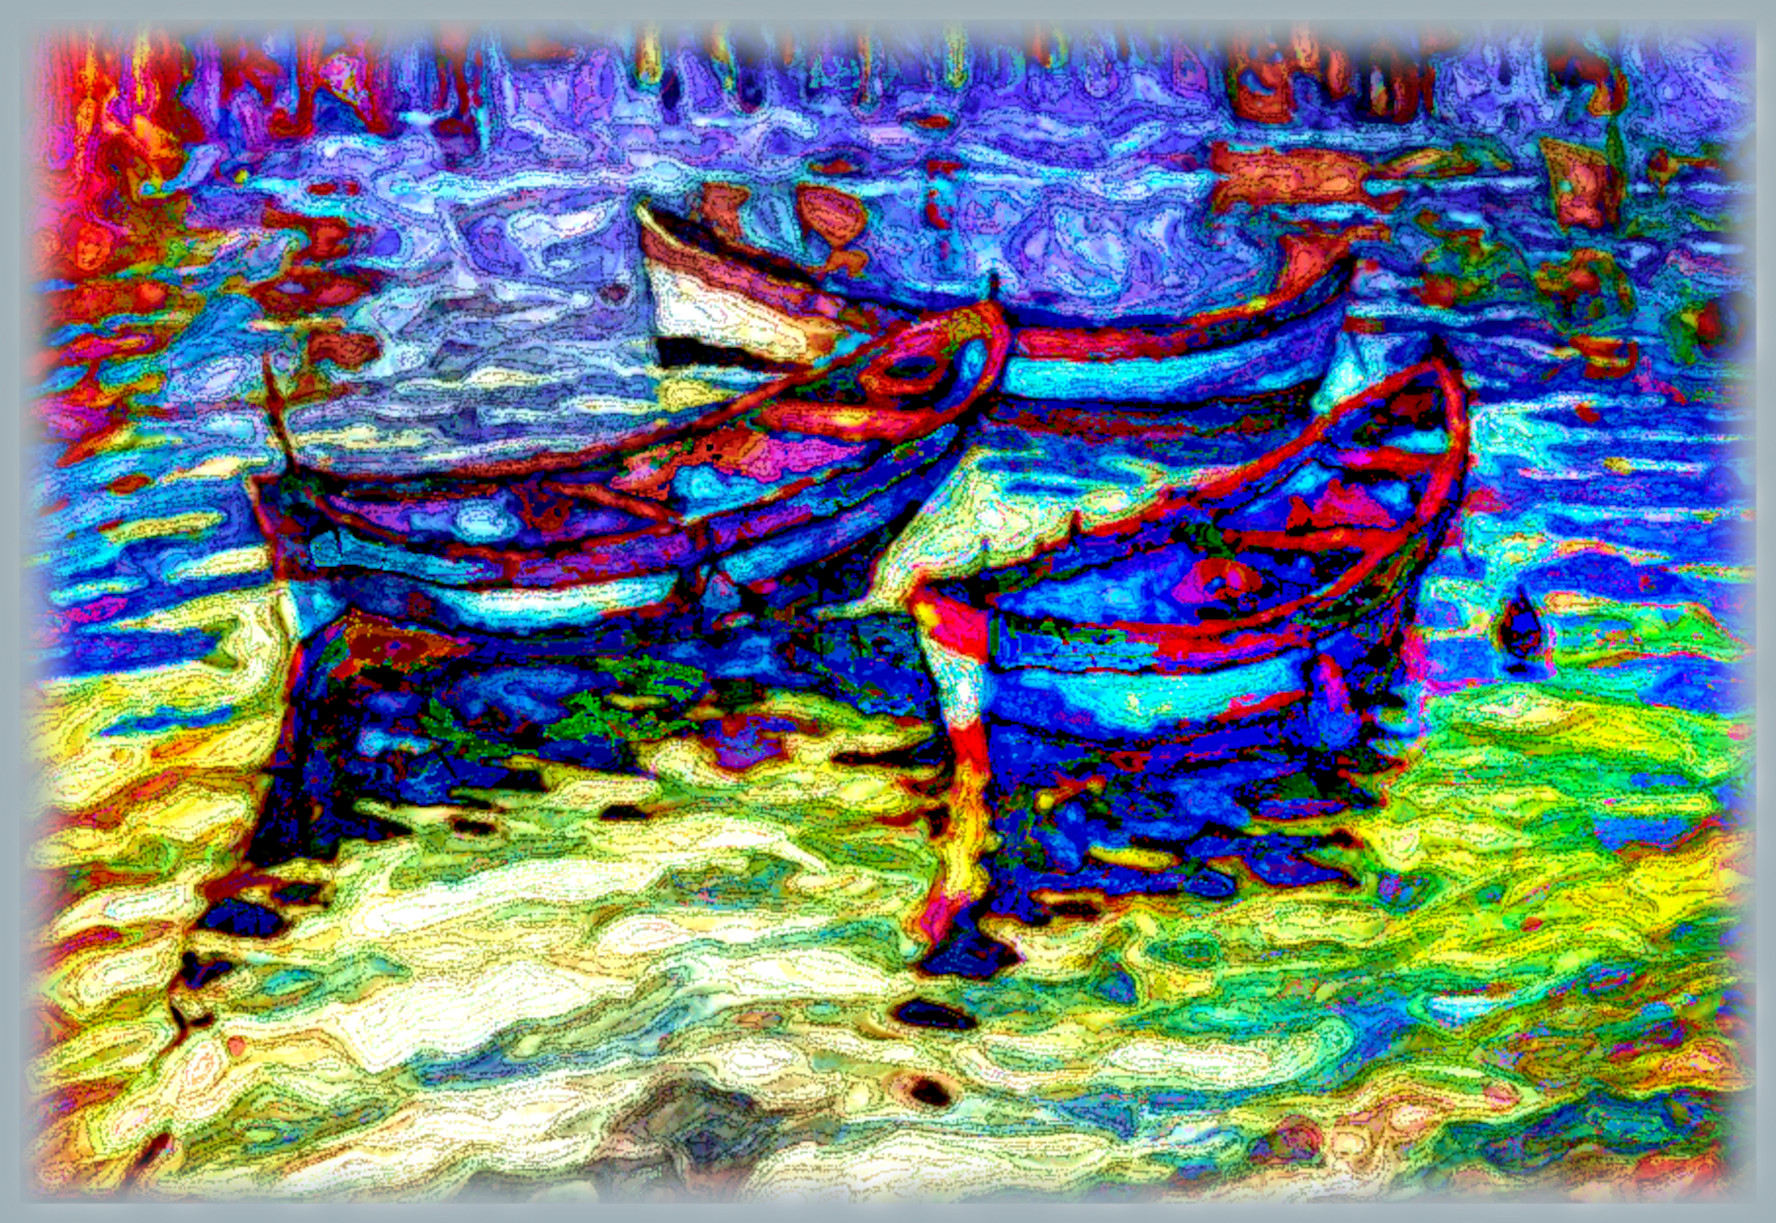 boats_in_the_sunset_by_spirosart_da4cga9-DN_DrawEffect_O.jpg